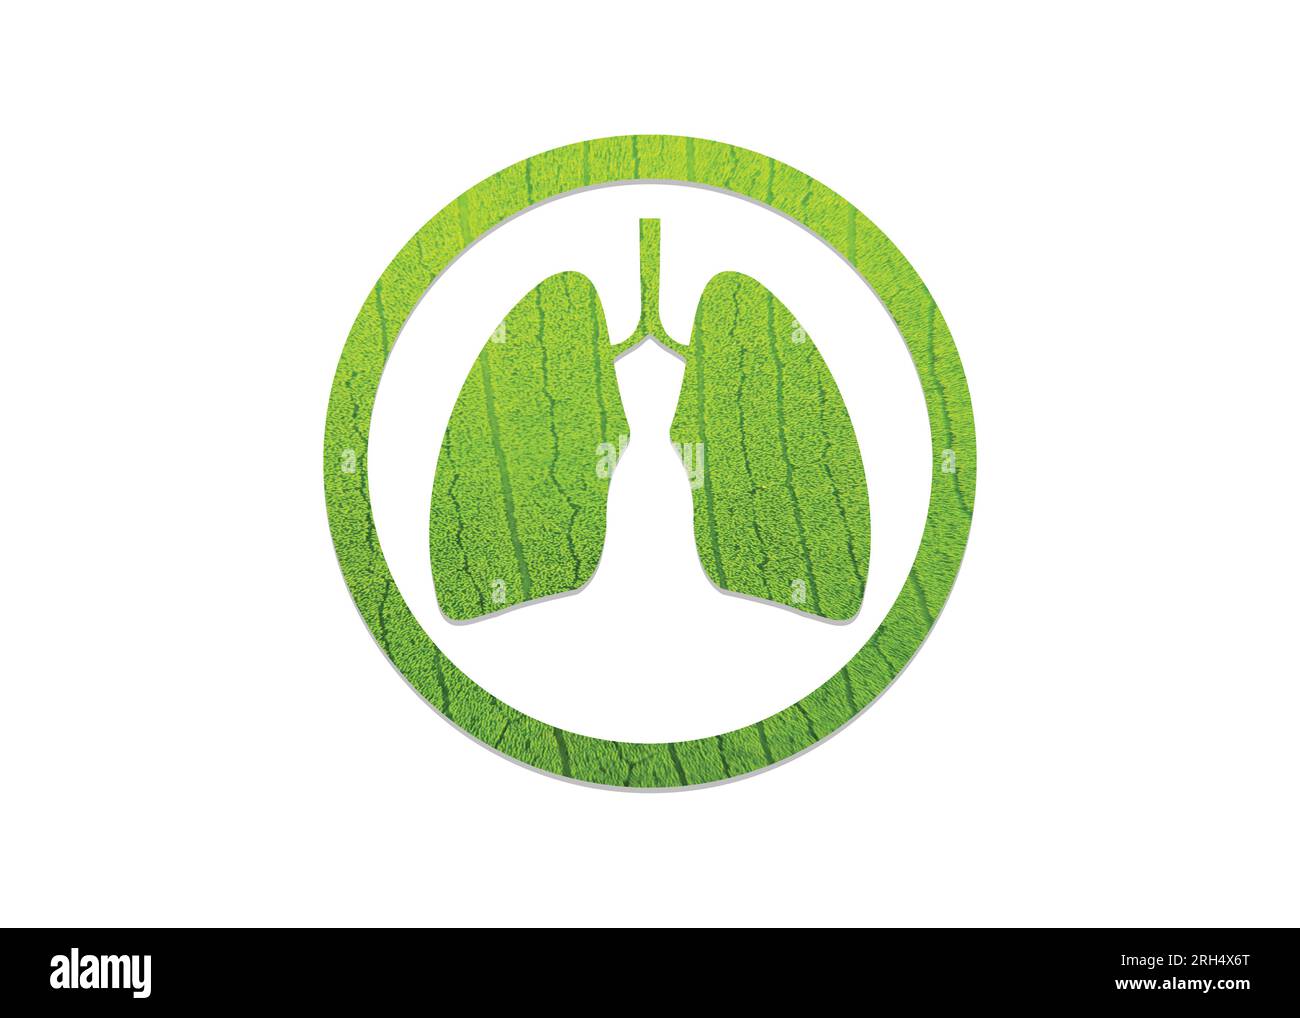 Grünes Blatt, geformt wie menschliche Lungen, konzeptionelle Vektordarstellung. Lungenform auf weißem Hintergrund isoliert- Grün und ökologisches Konzept. Weltgesundheit Stock Vektor